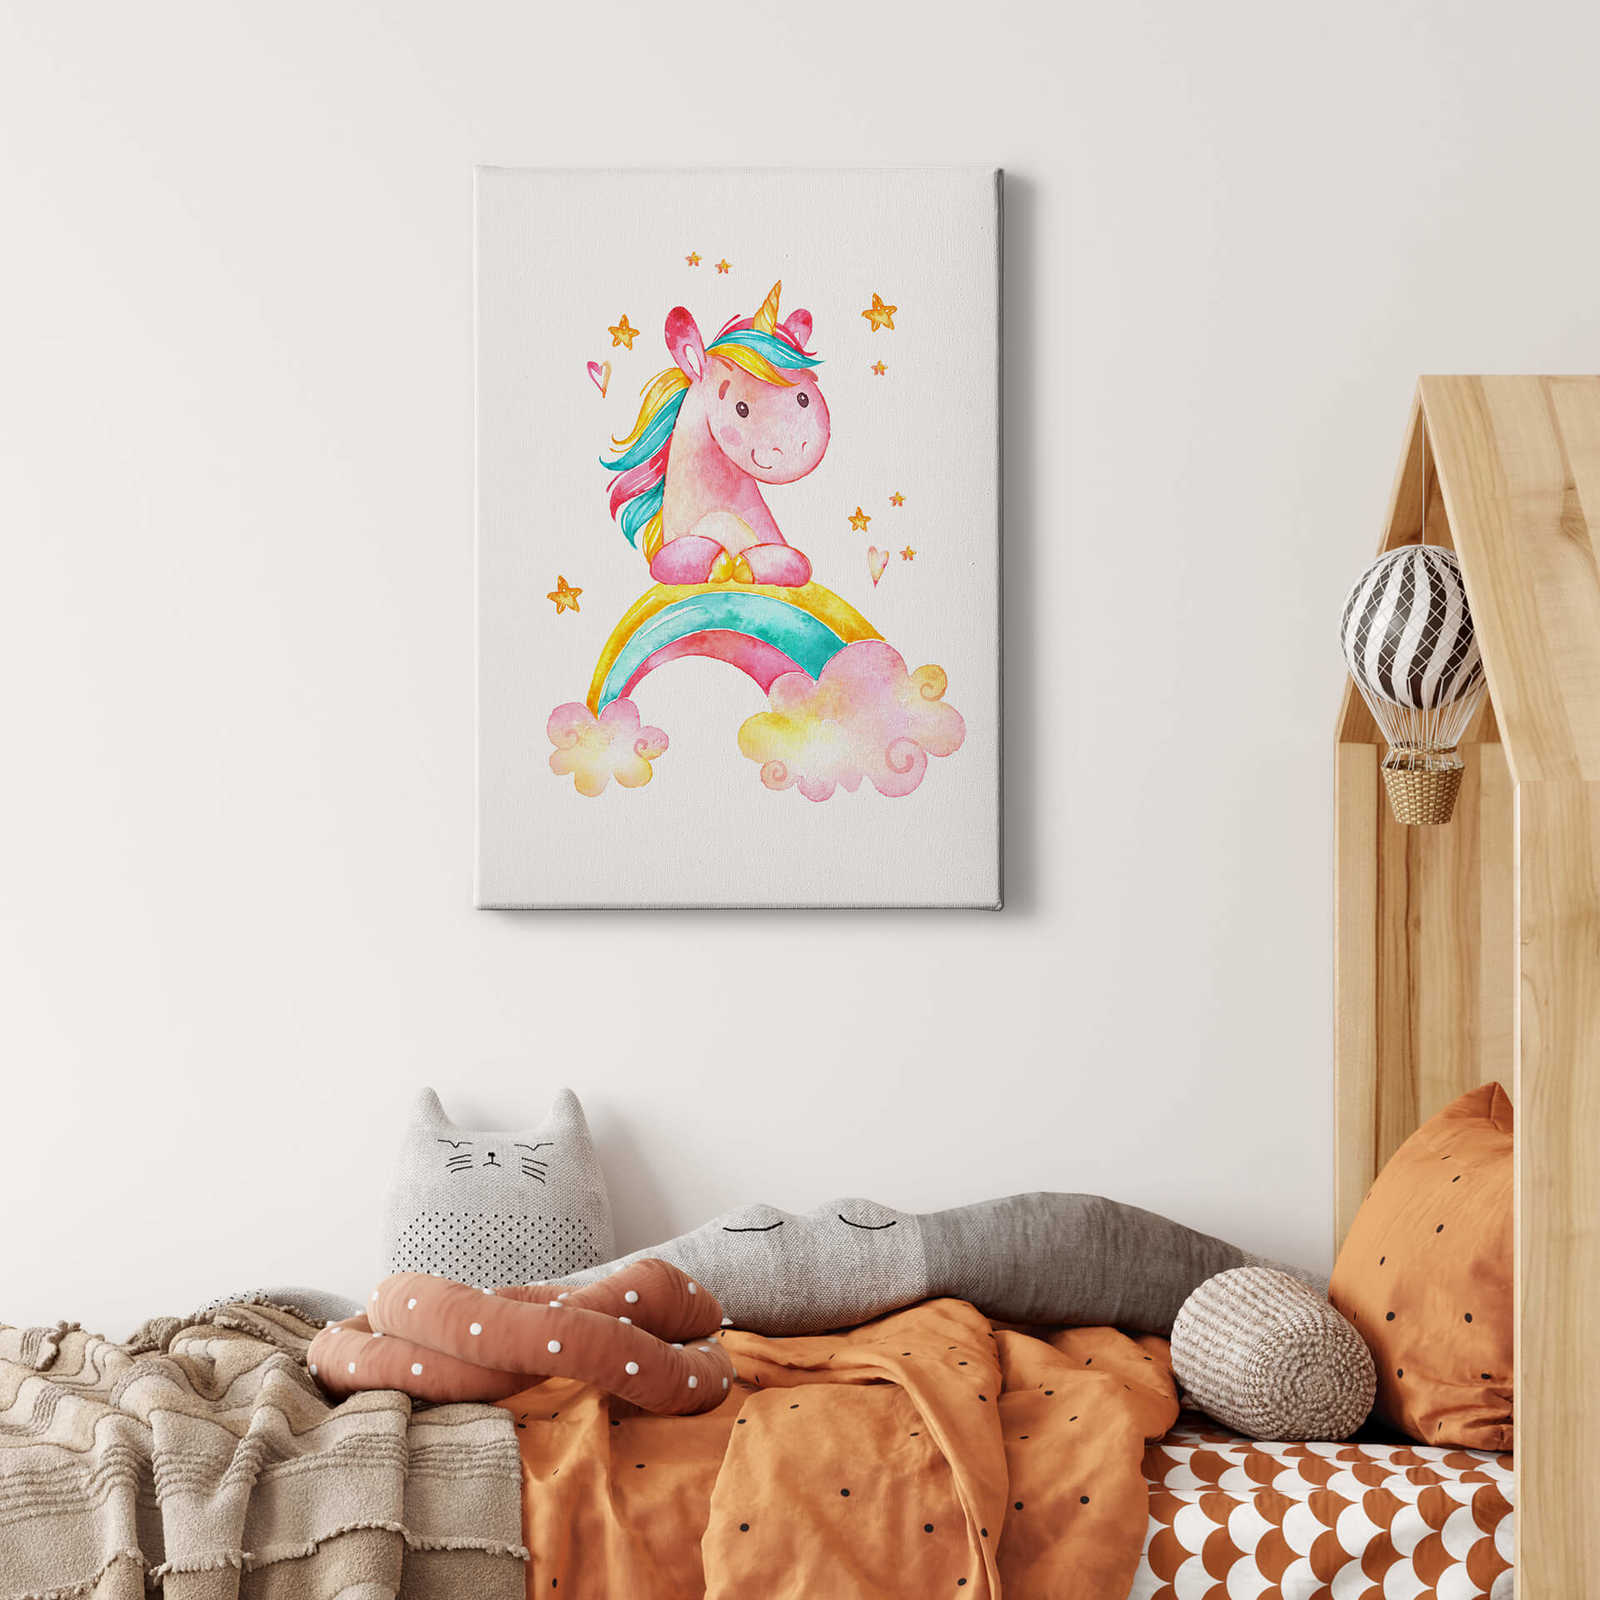             Leinwandbild Einhorn und Regenbogen – 0,50 m x 0,70 m
        